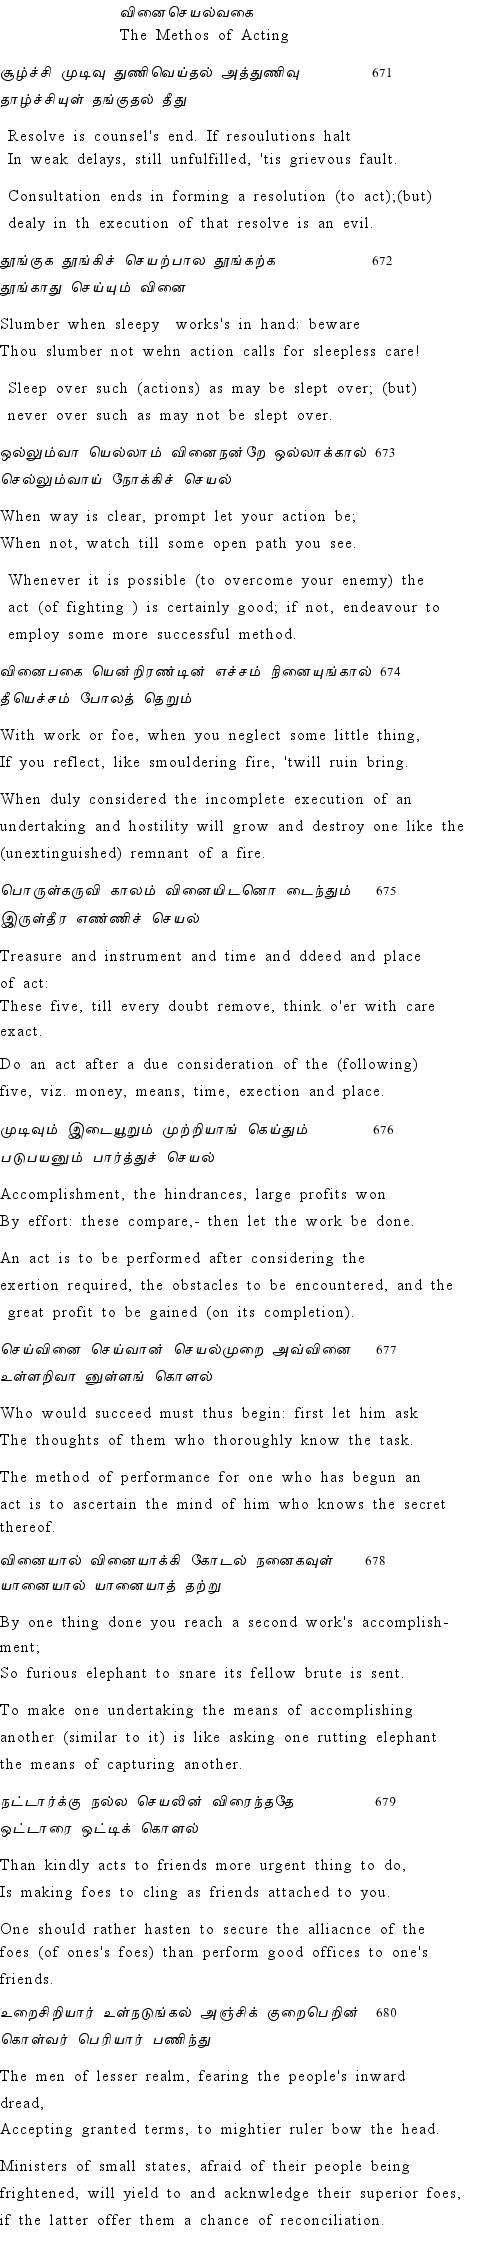 Text of Adhikaram 68